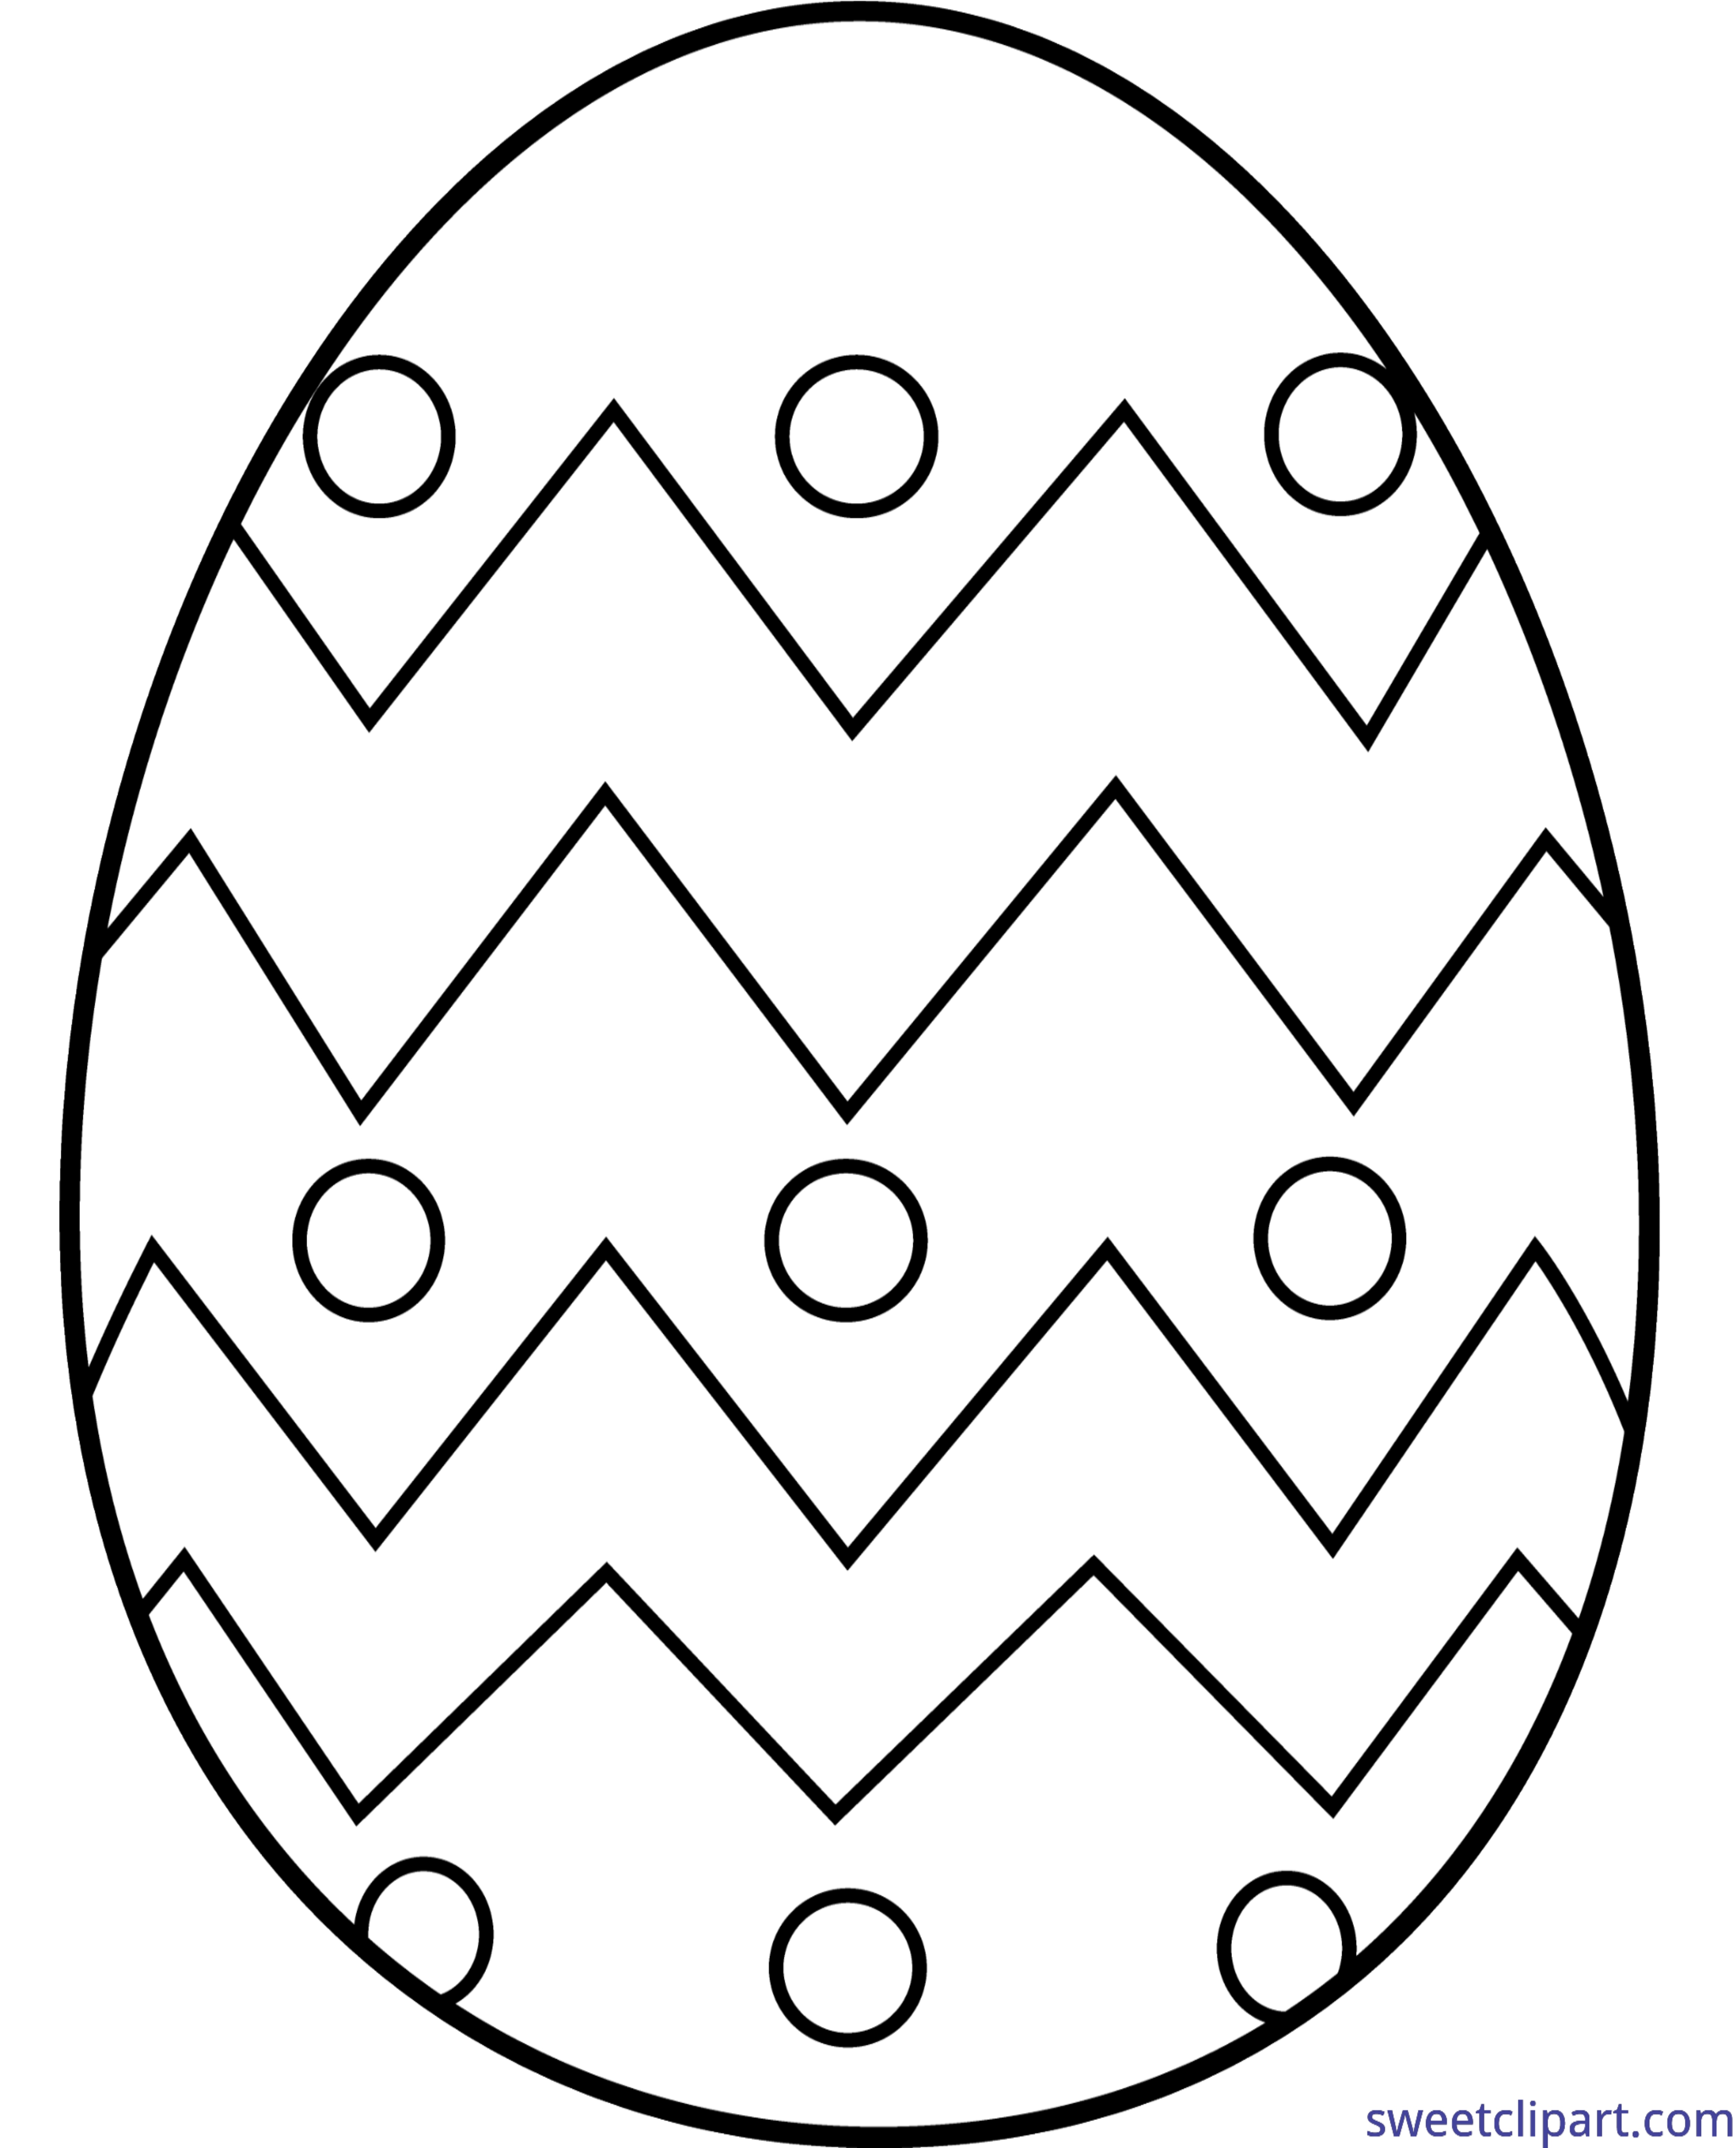 Пасхальное яйцо рисунок для детей. Пасхальное яйцо раскраска для детей 3-4 лет. Трафареты пасхальных яиц для раскрашивания. Пасхальное яйцо раскраска шаблон. Раскраски яйца на Пасху для детей.